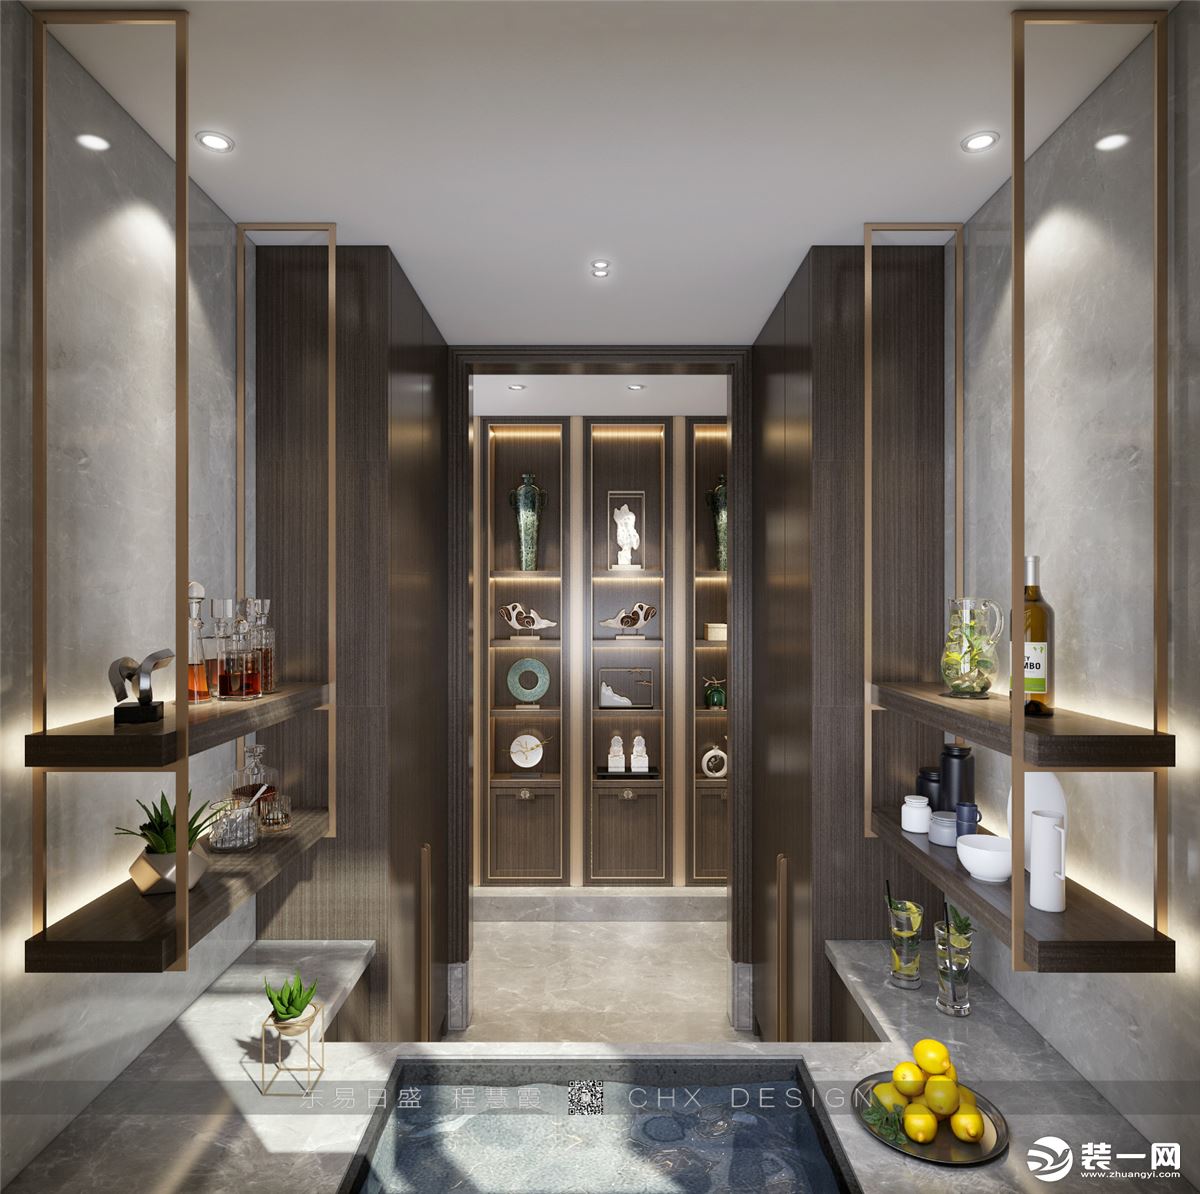 宜昌龙岛六号别墅500平东方禅意新中式风格效果图陈列室